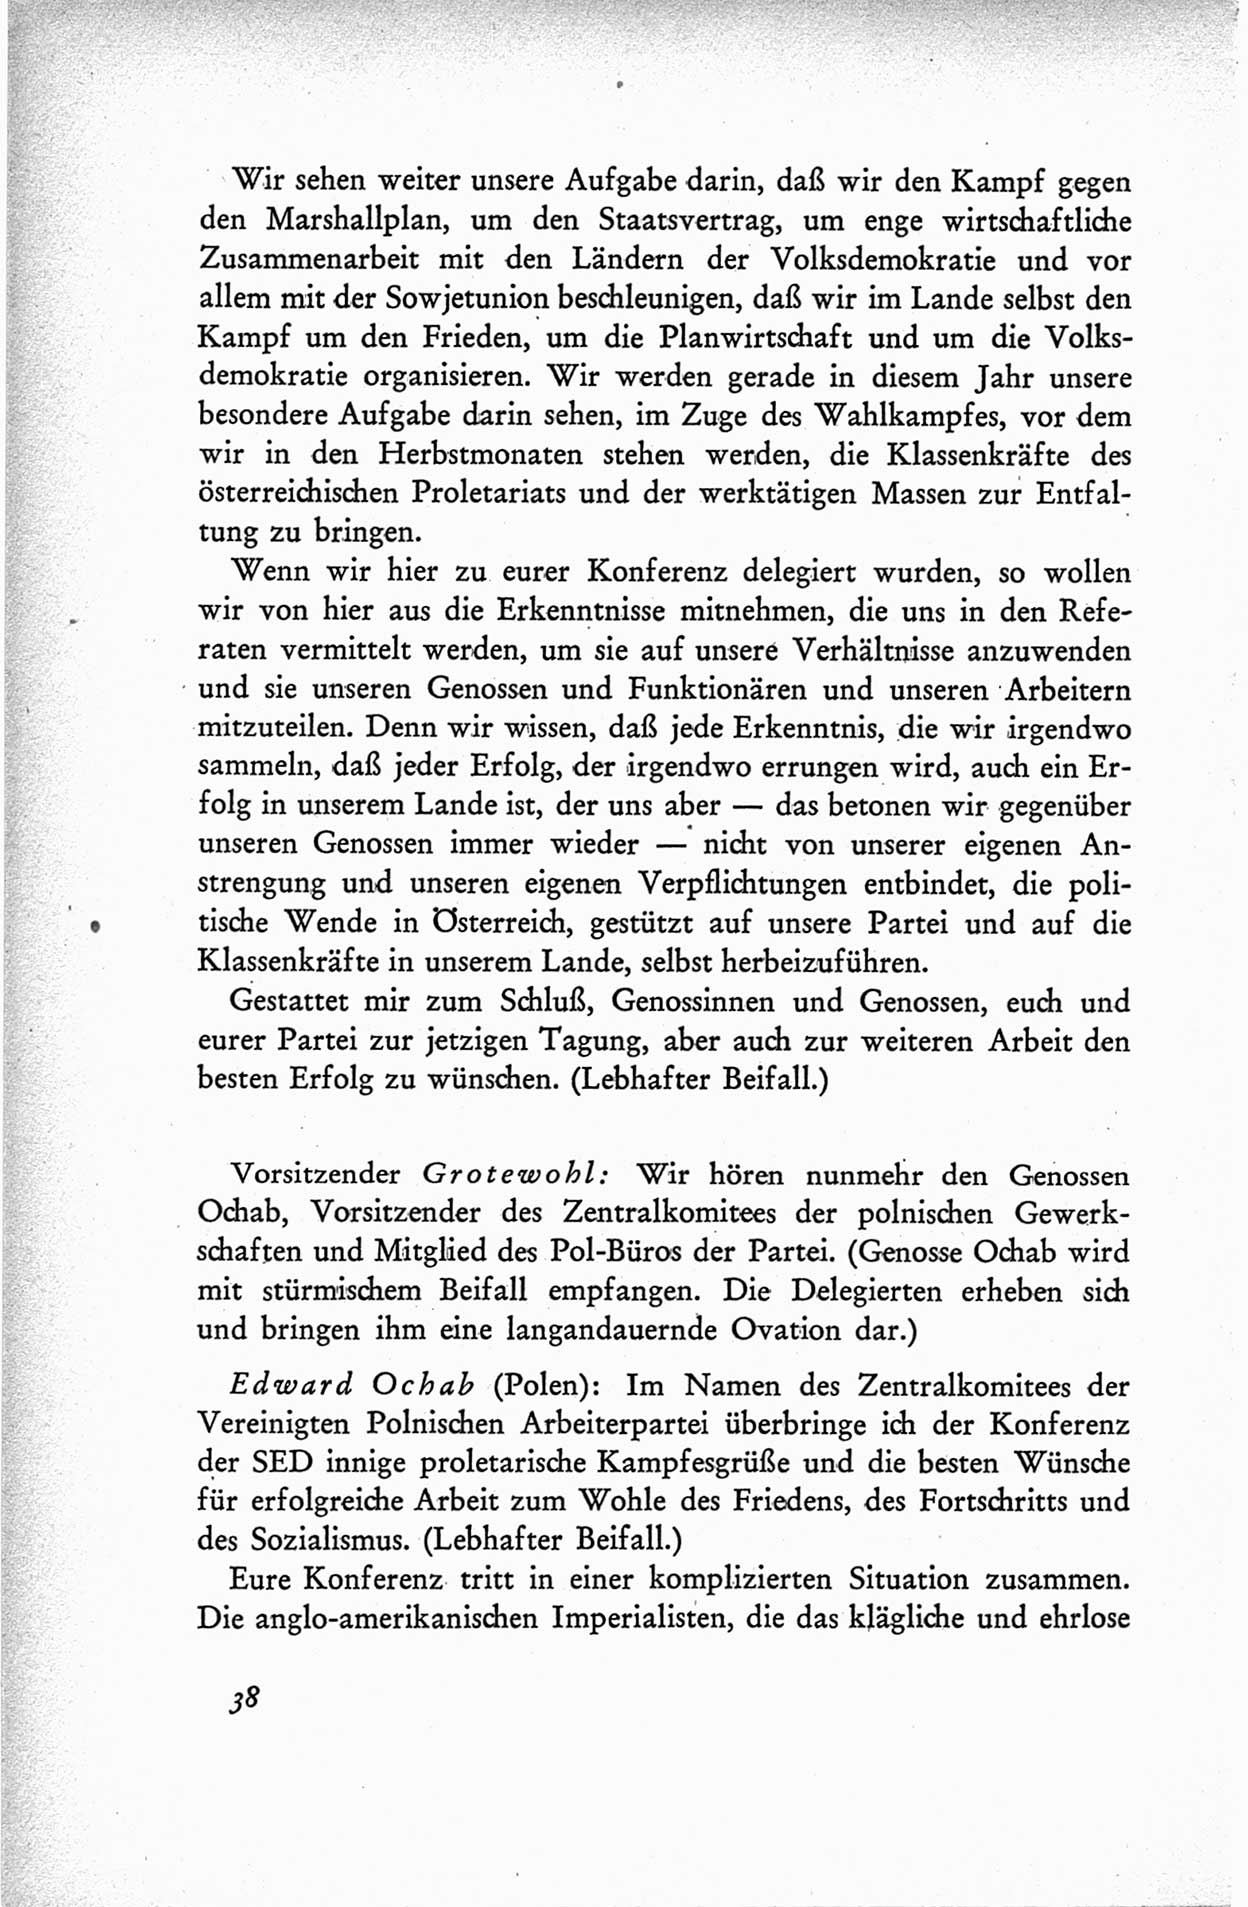 Protokoll der ersten Parteikonferenz der Sozialistischen Einheitspartei Deutschlands (SED) [Sowjetische Besatzungszone (SBZ) Deutschlands] vom 25. bis 28. Januar 1949 im Hause der Deutschen Wirtschaftskommission zu Berlin, Seite 38 (Prot. 1. PK SED SBZ Dtl. 1949, S. 38)